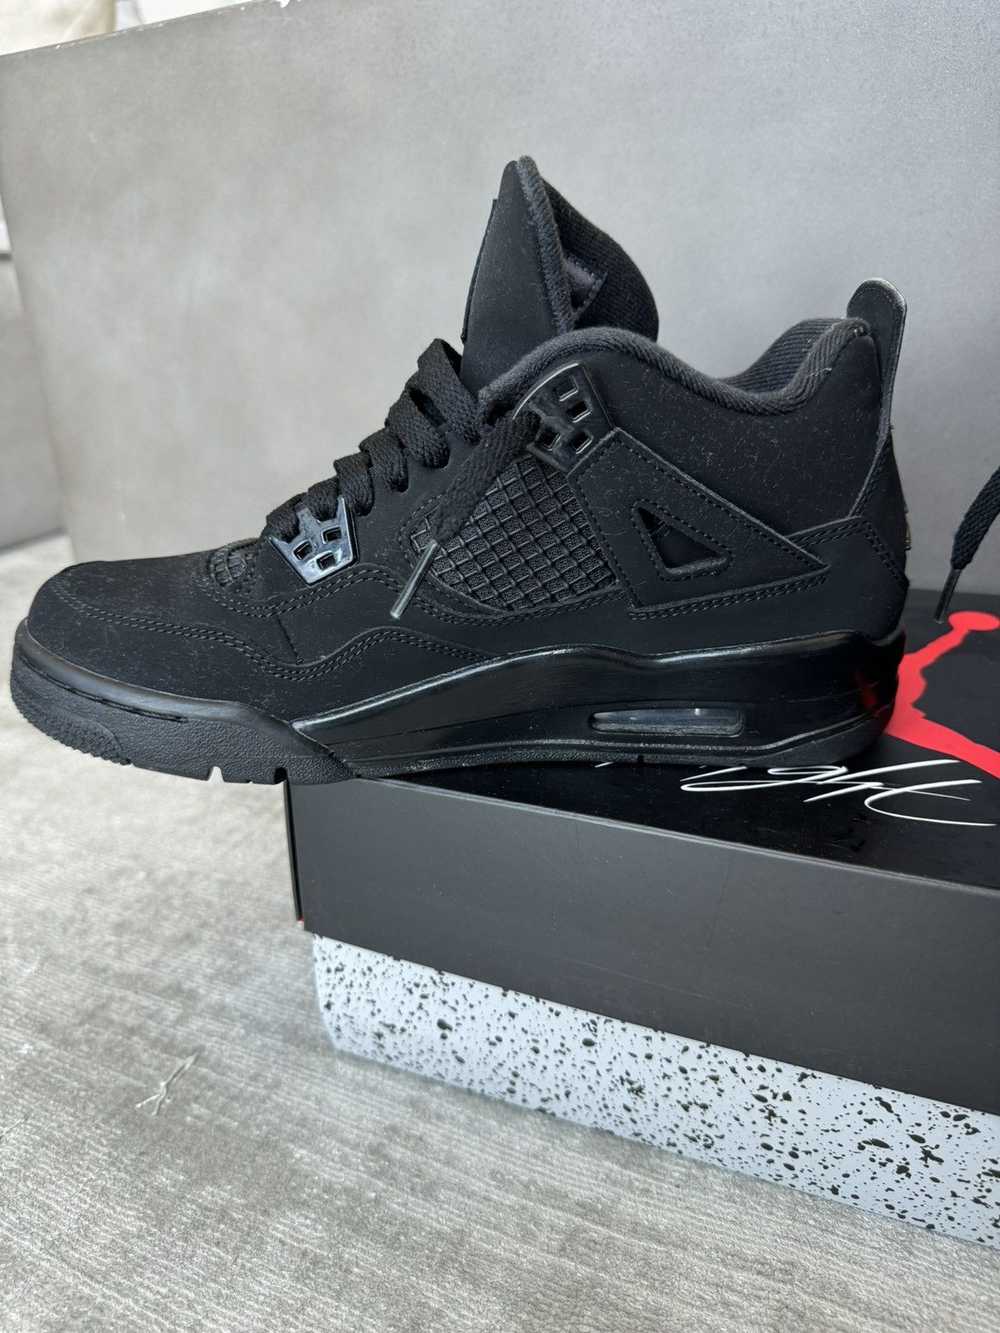 Jordan Brand × Nike Air Jordan Retro 4 Black Cat … - image 6